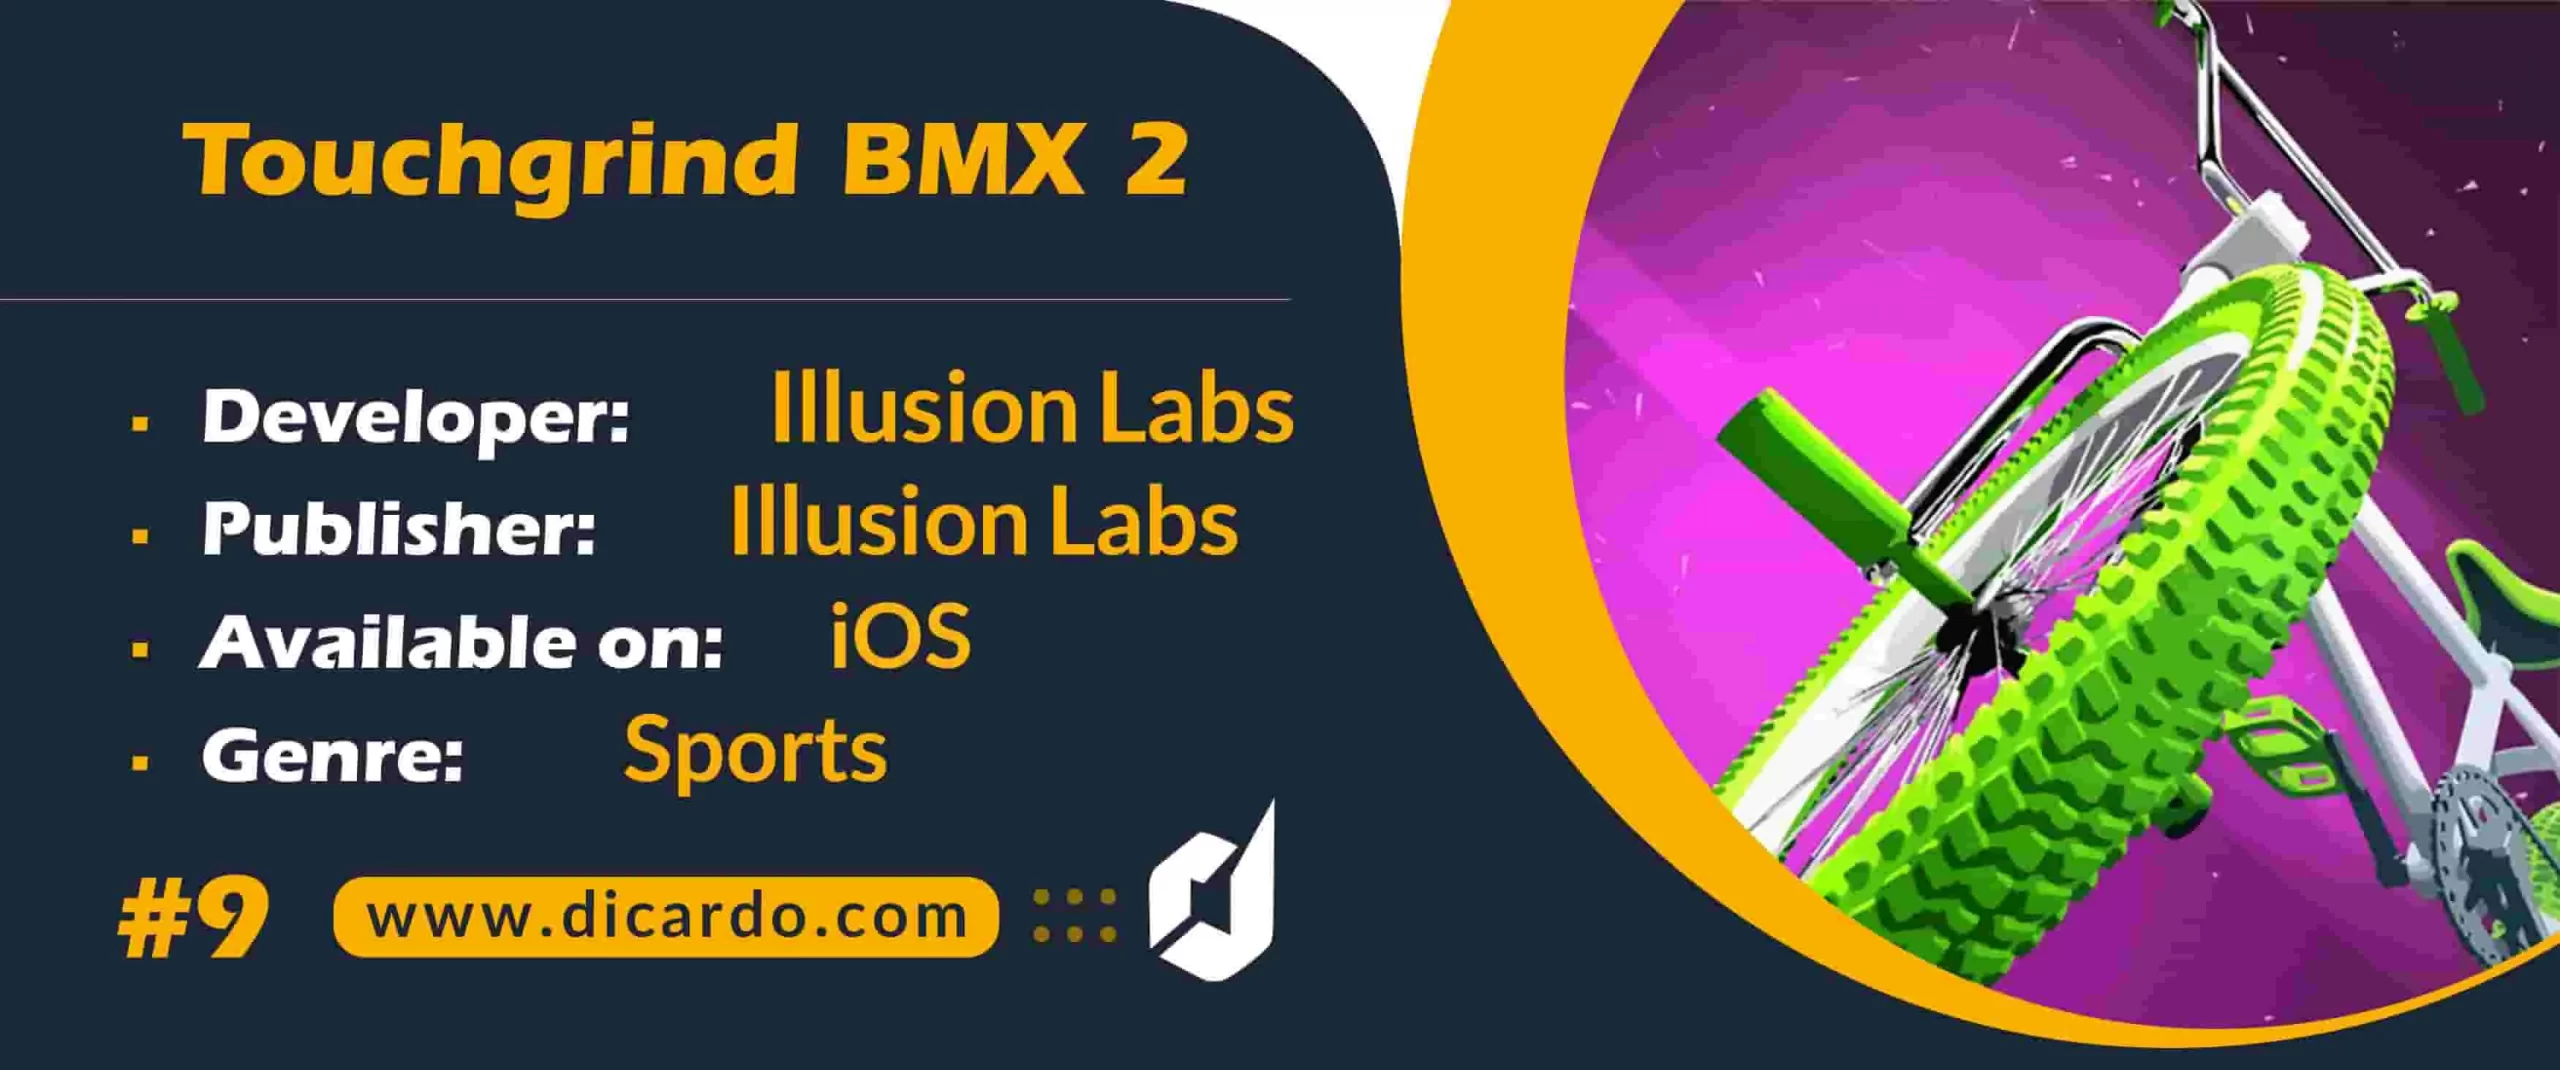 #9 تاچ گرند بی ام ایکس 2 Touchgrind BMX 2 از پیچیده ترین بازیهای ورزشی موبایل